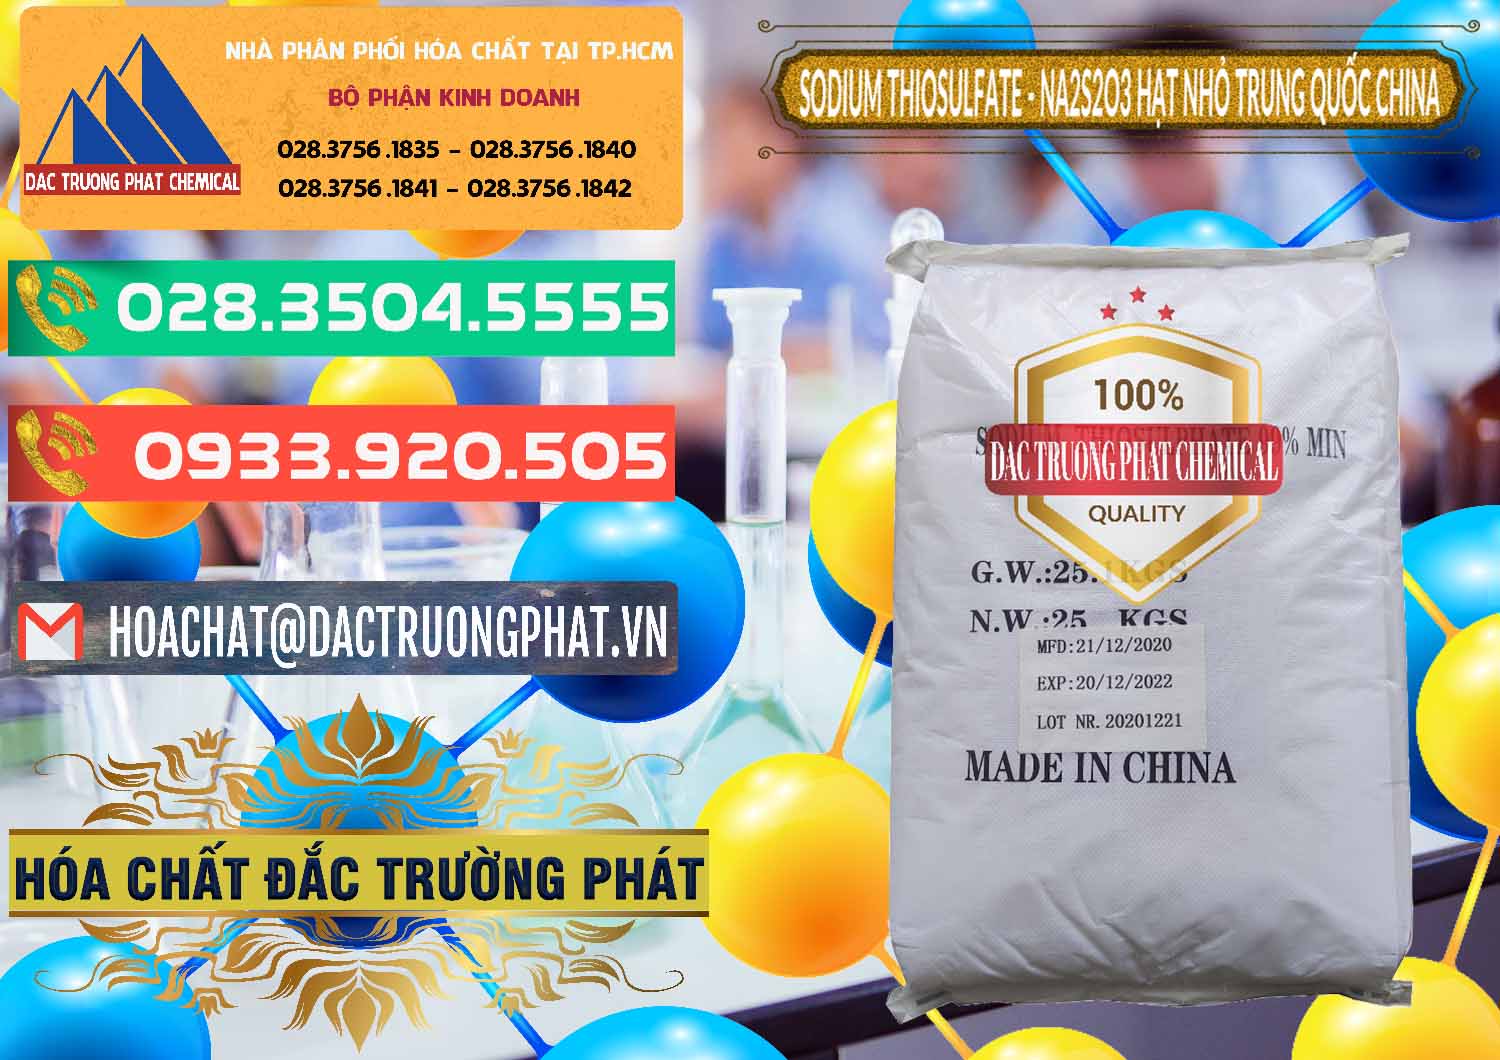 Đơn vị chuyên cung cấp - bán Sodium Thiosulfate - NA2S2O3 Hạt Nhỏ Trung Quốc China - 0204 - Công ty chuyên cung cấp ( kinh doanh ) hóa chất tại TP.HCM - congtyhoachat.com.vn